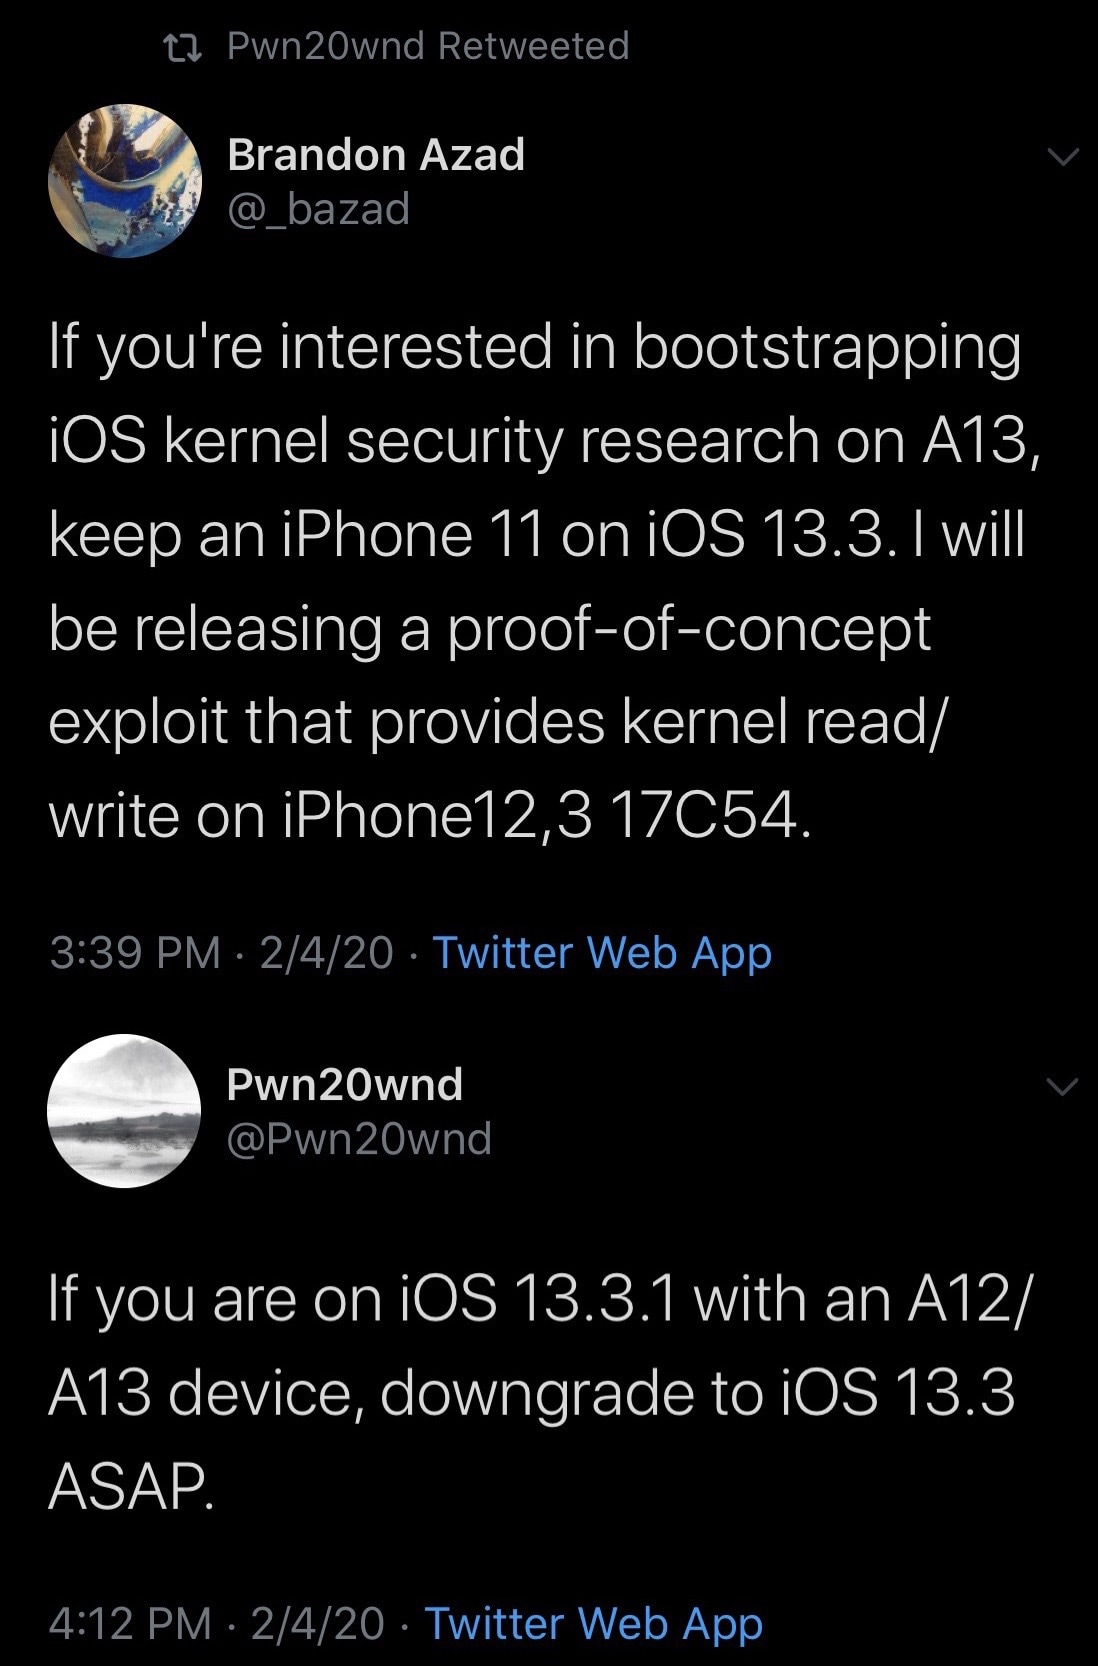 Brandon Azad berencana untuk merilis exploit baru untuk iPhone 11 di iOS 13.3 3